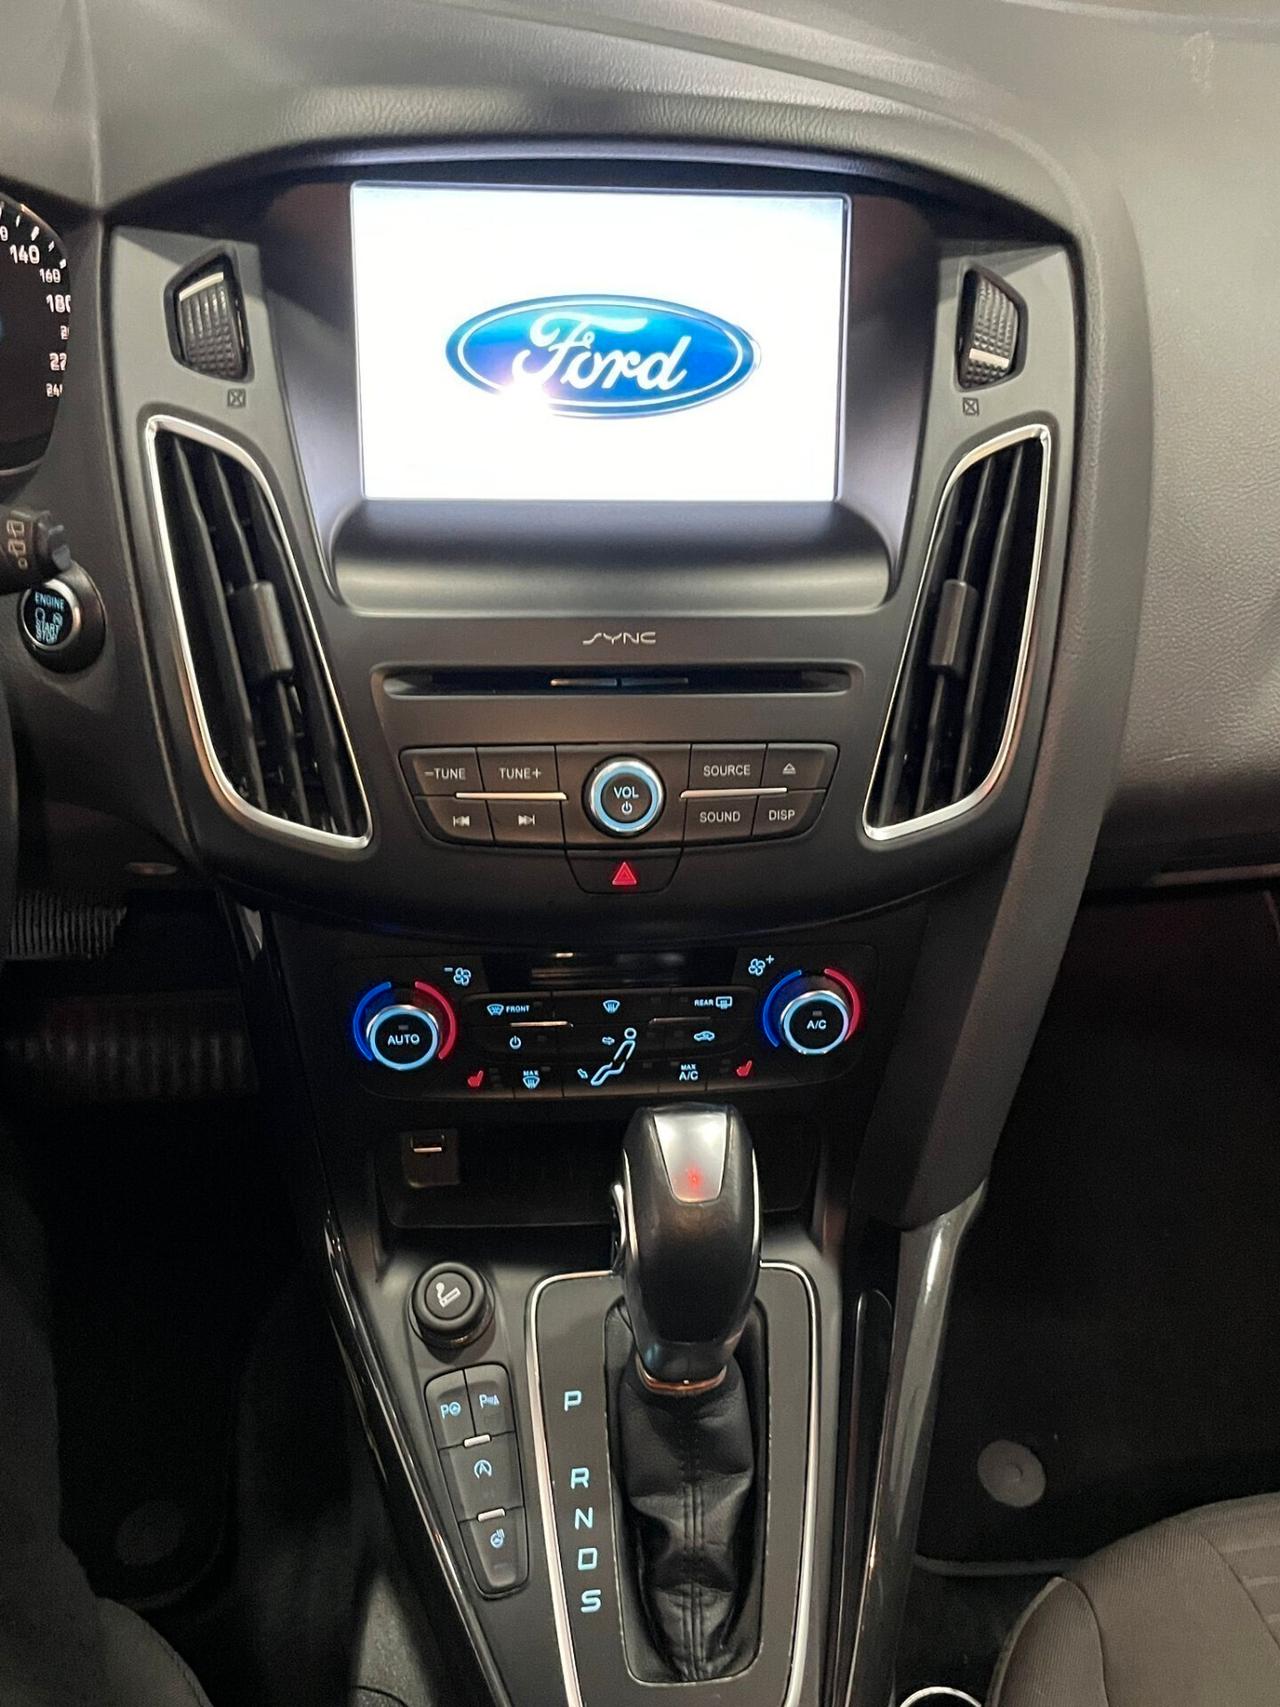 Ford Focus 1.5 TDCi 120 CV Start&amp;amp;amp;amp;amp;amp;amp;amp;amp;amp;amp;amp;amp;amp;amp;amp;amp;amp;amp;amp;amp;amp;amp;amp;Stop Powershift Titanium